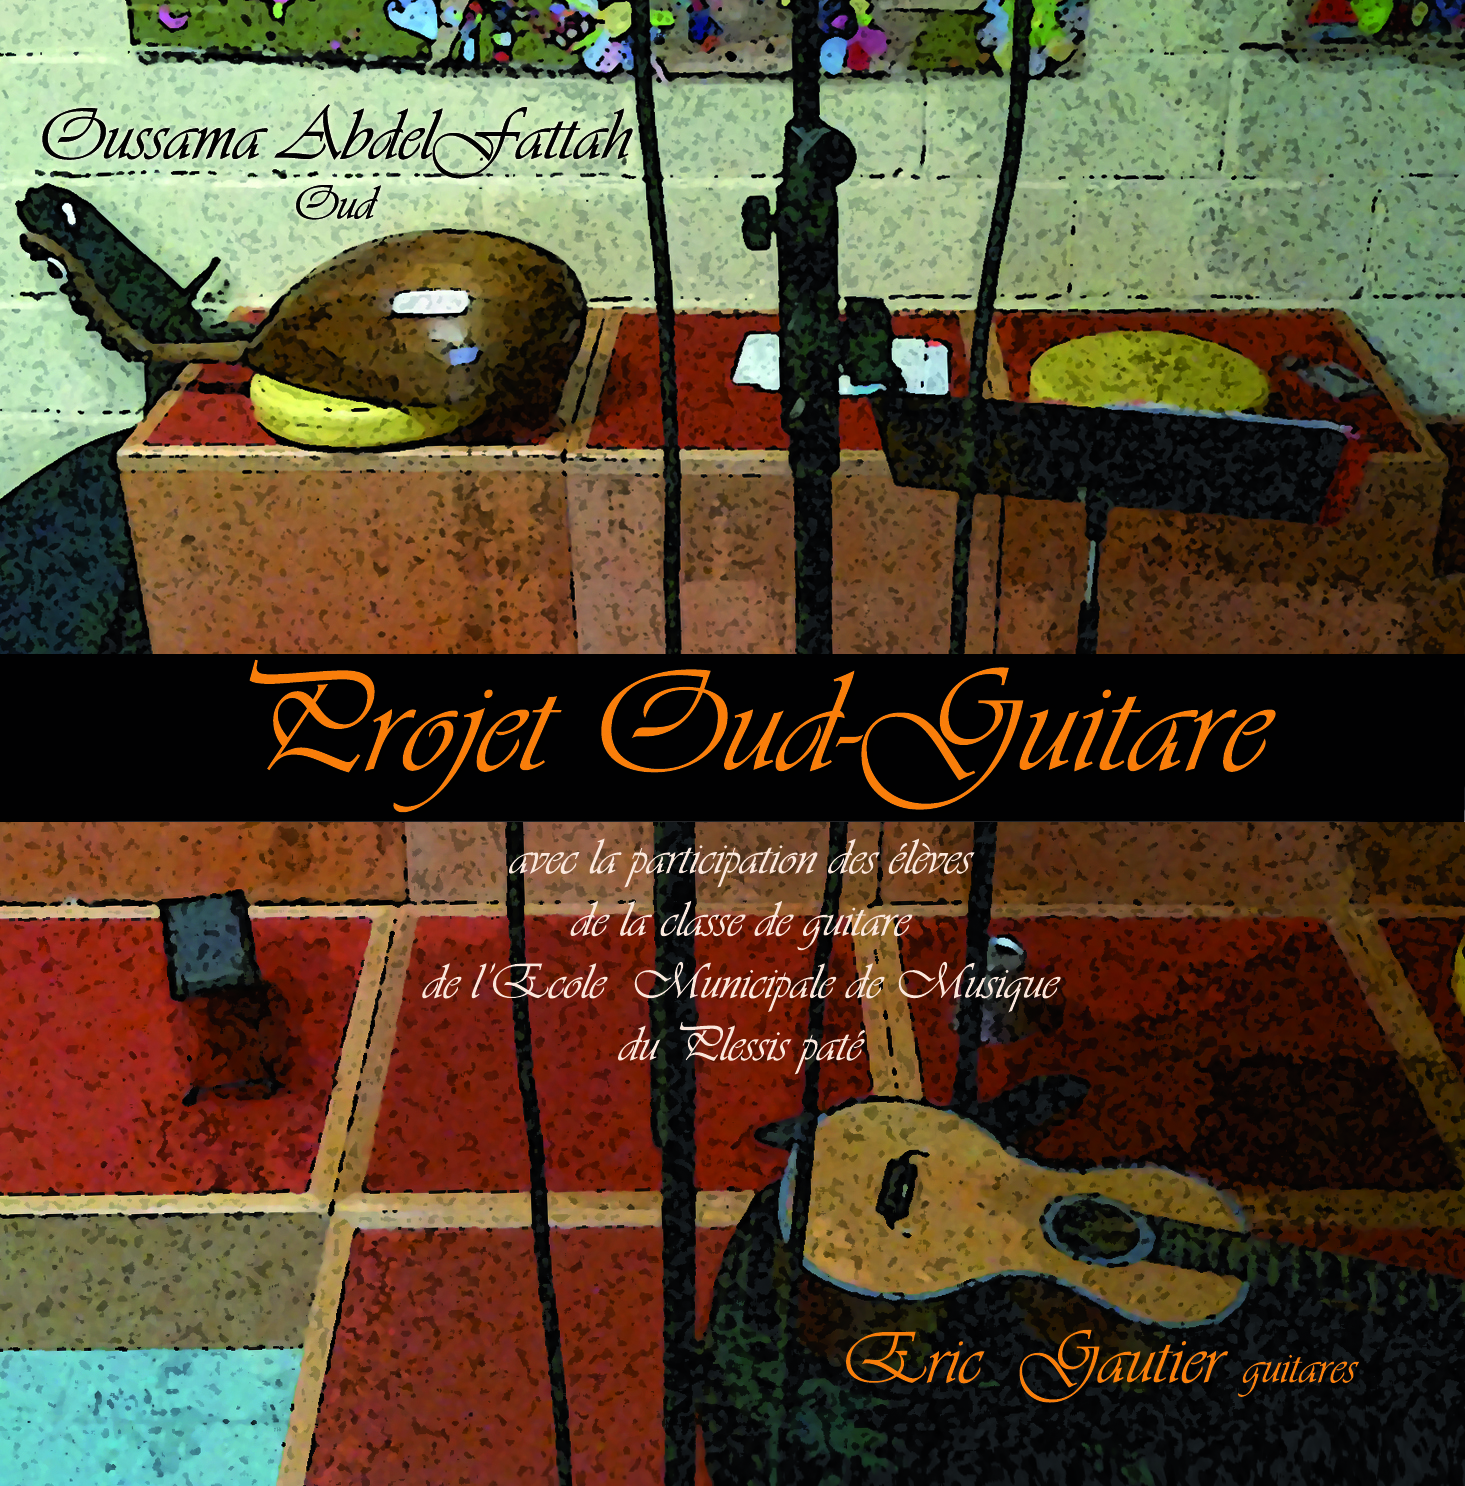 Projet pédagogique Oud-Guitare 